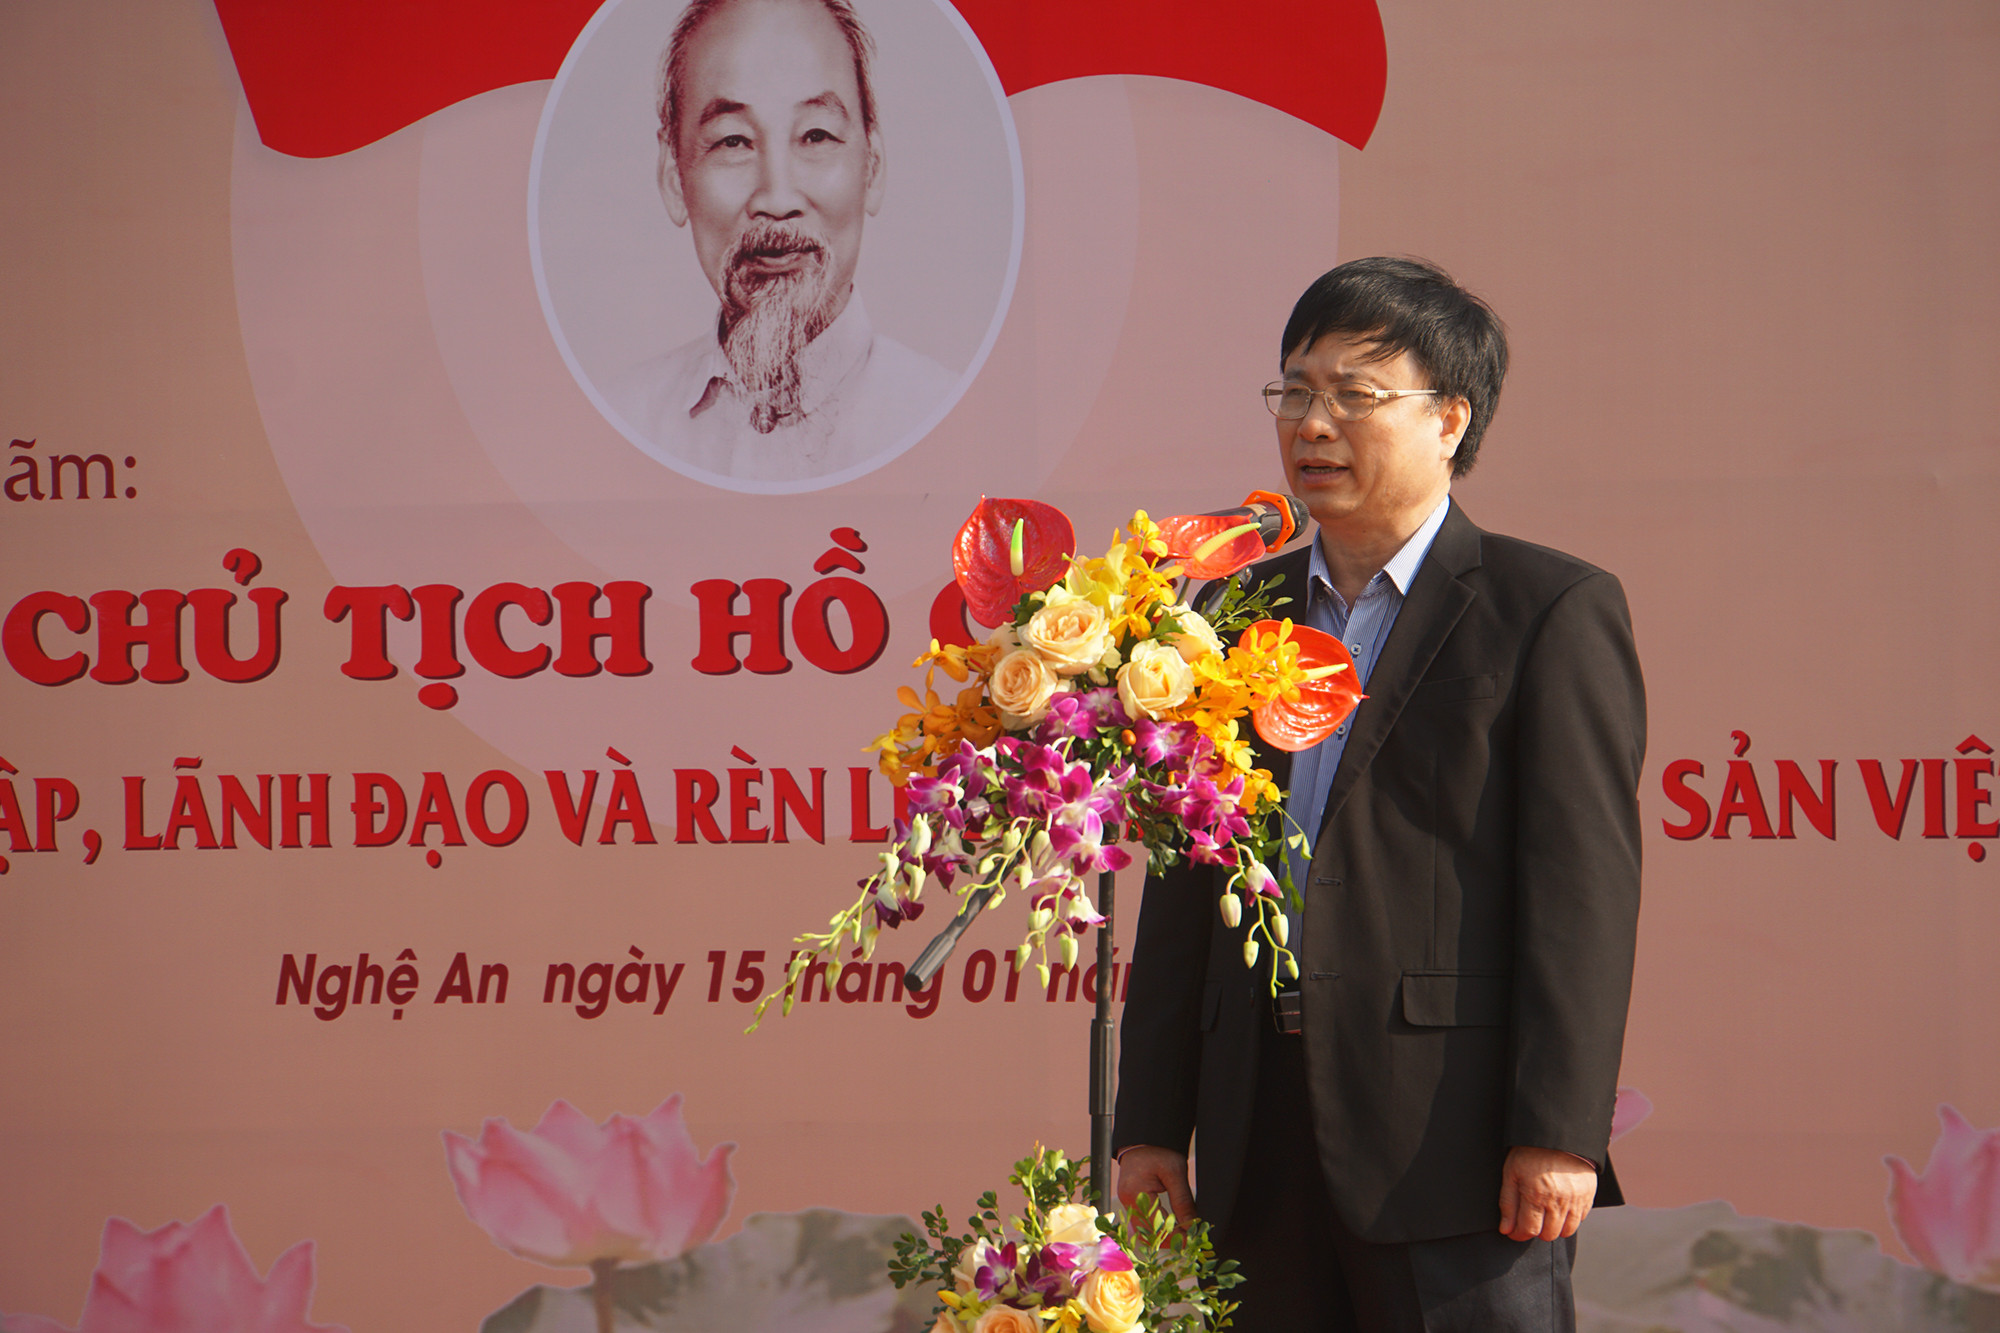 Đồng chí Bùi Đình Long – Ủy viên BCH Tỉnh ủy - Phó chủ tịch UBND tỉnh Nghệ An phát biểu tại triển lãm. Ảnh: Trung Kiên